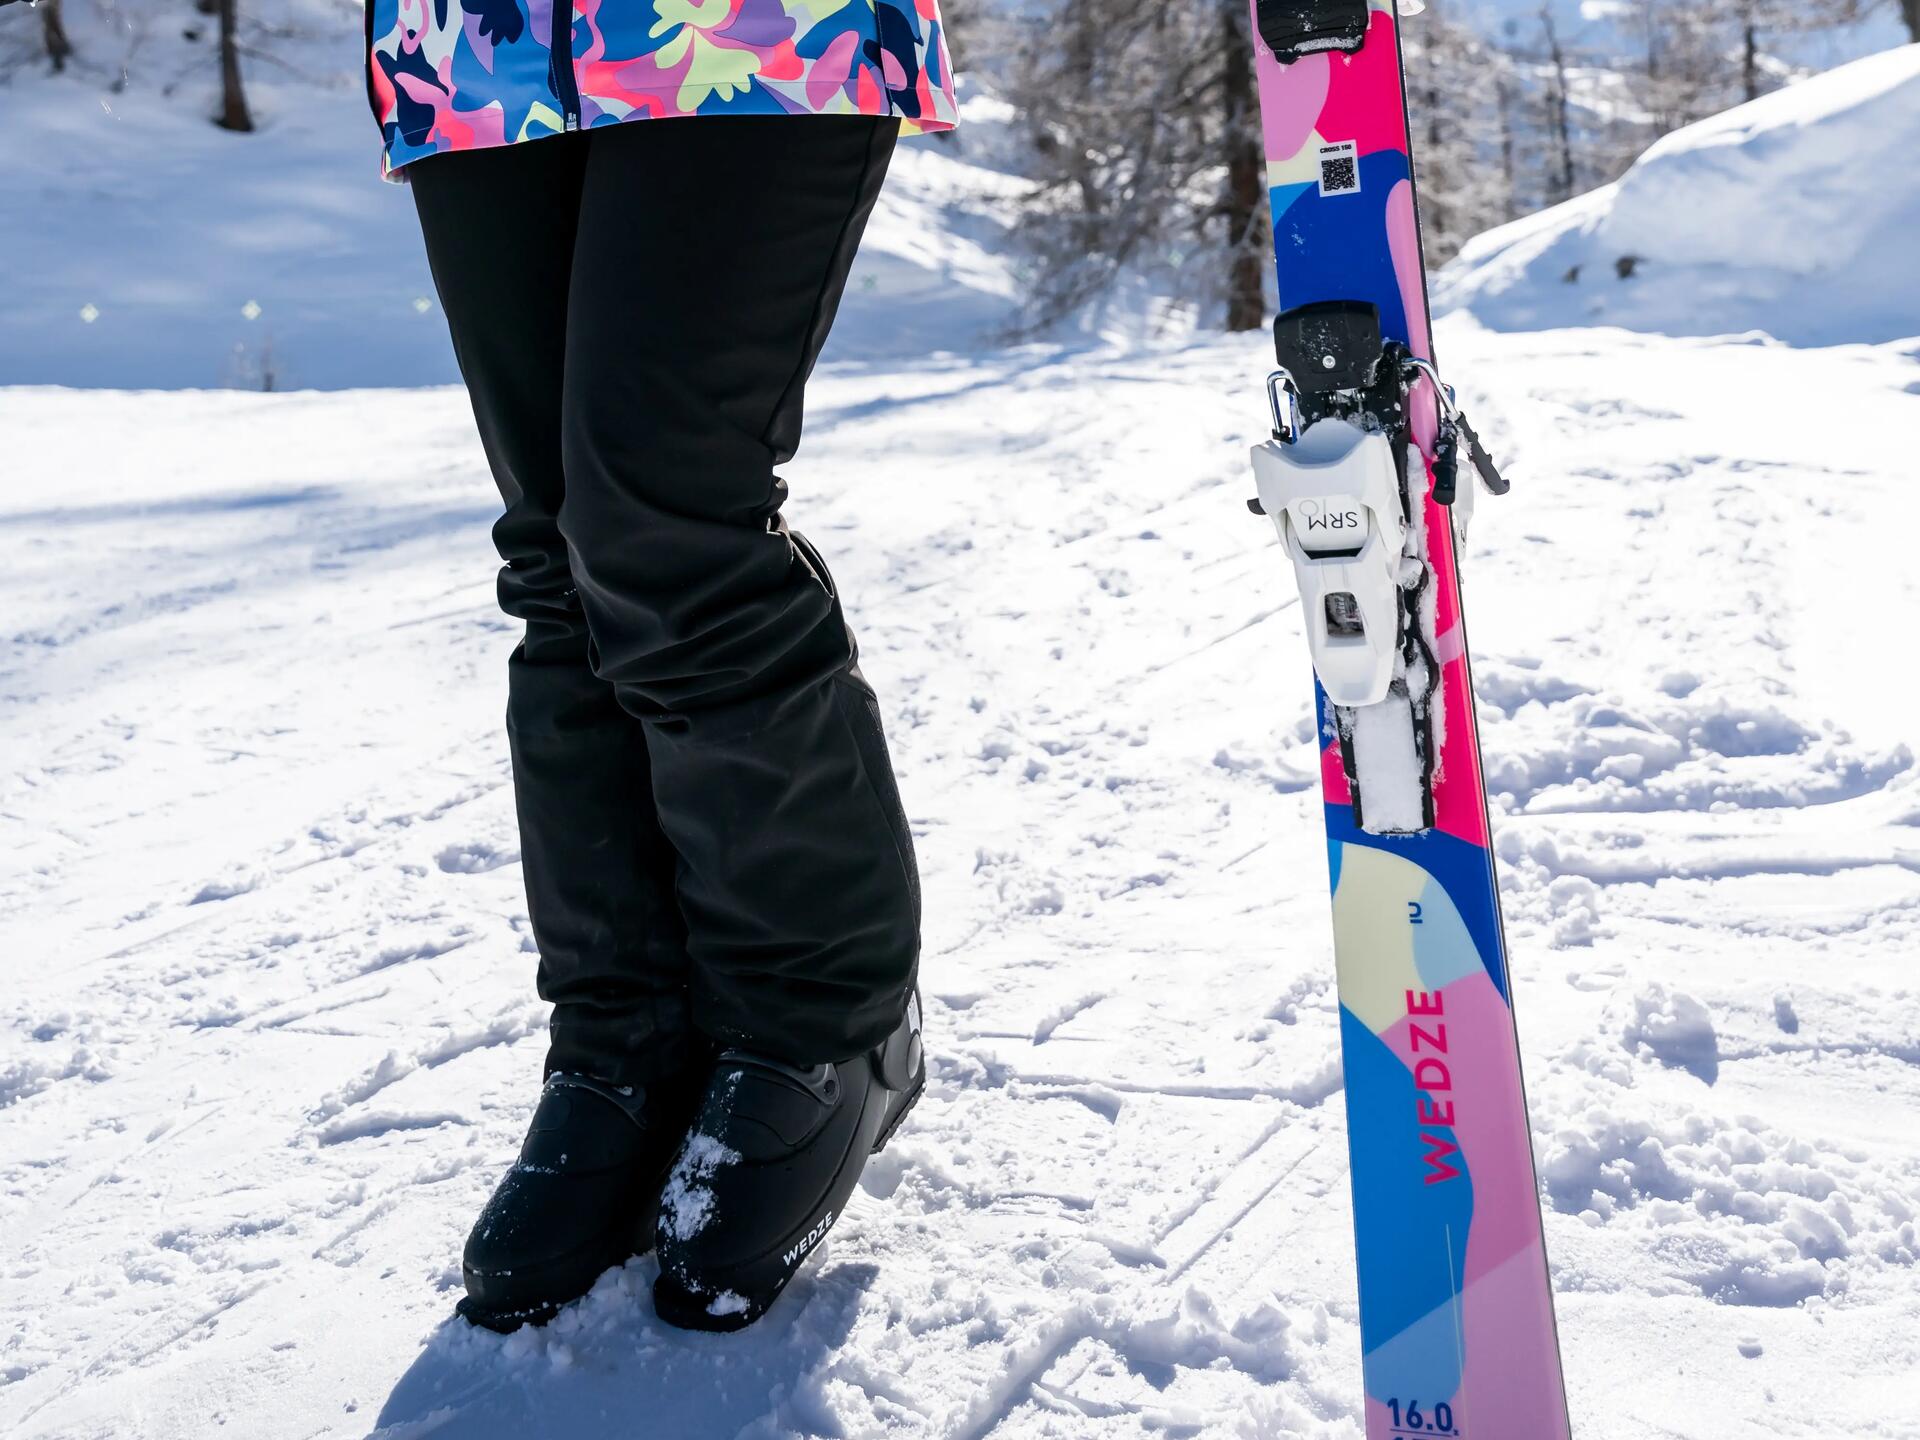 kobieta stojąca na śniegu w stroju i butach narciarskich trzymając w ręce narty